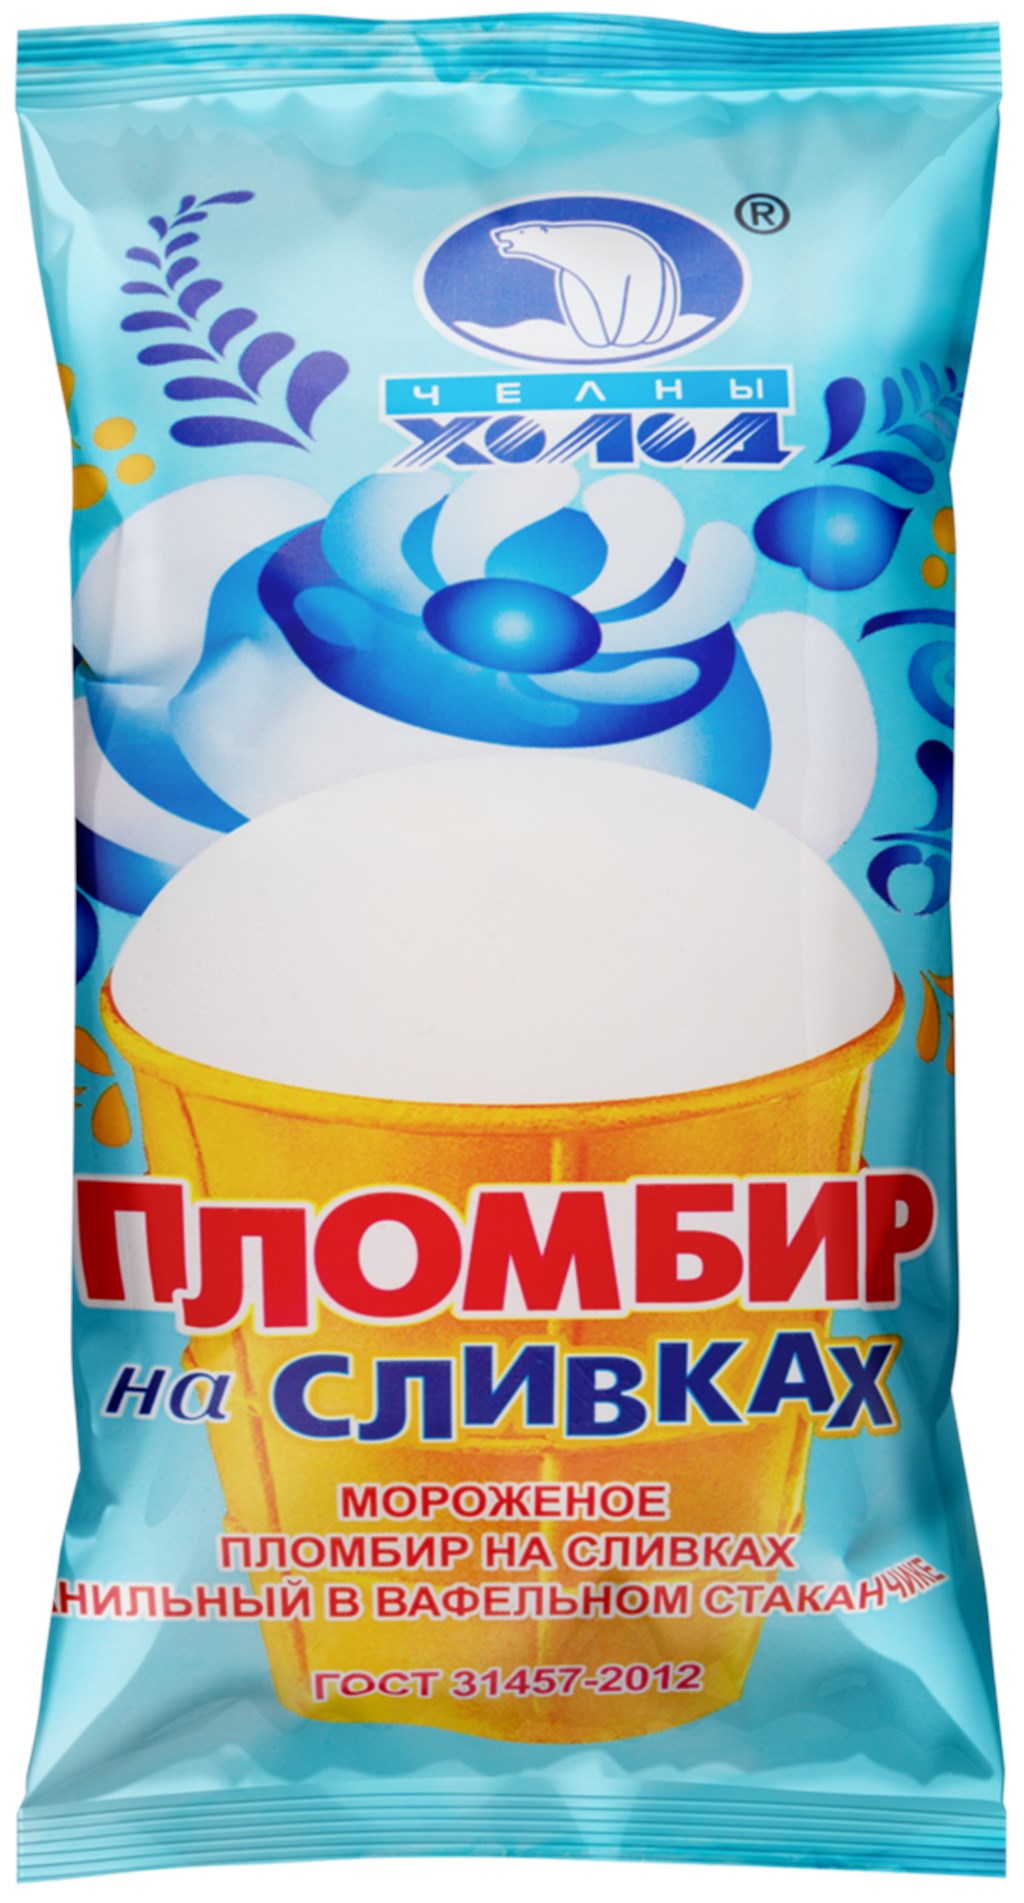 Мороженое Пломбир на сливках в вафельном стаканчике - Волгоград 